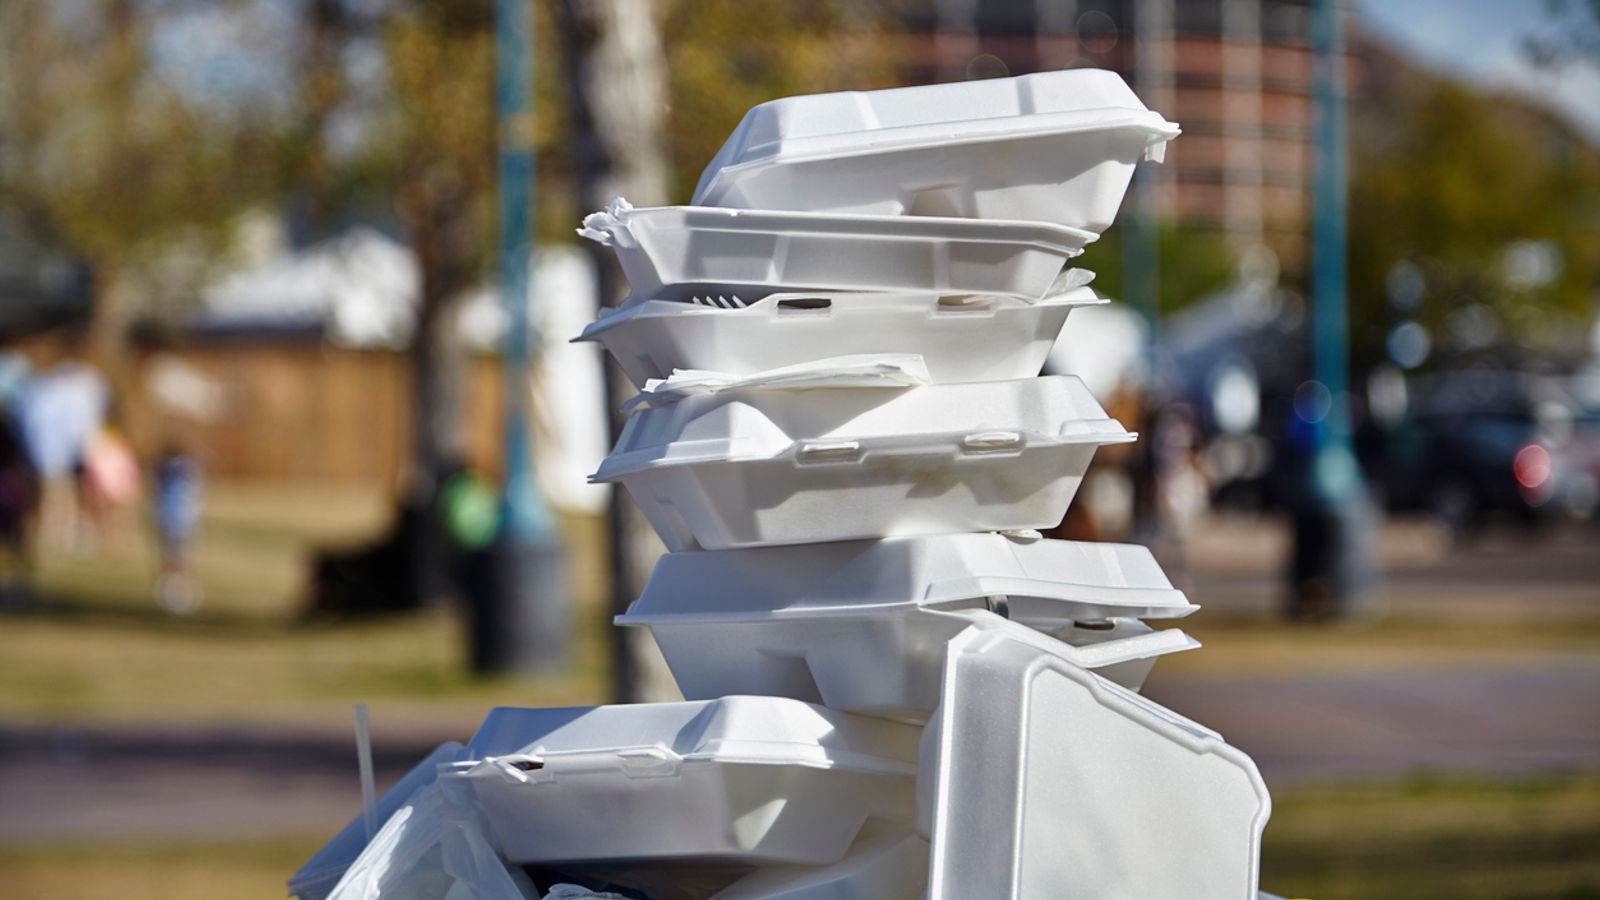 Забраната за еднократна употреба на пластмаса влиза в сила в Англия - с пластмасови прибори и чинии от масата